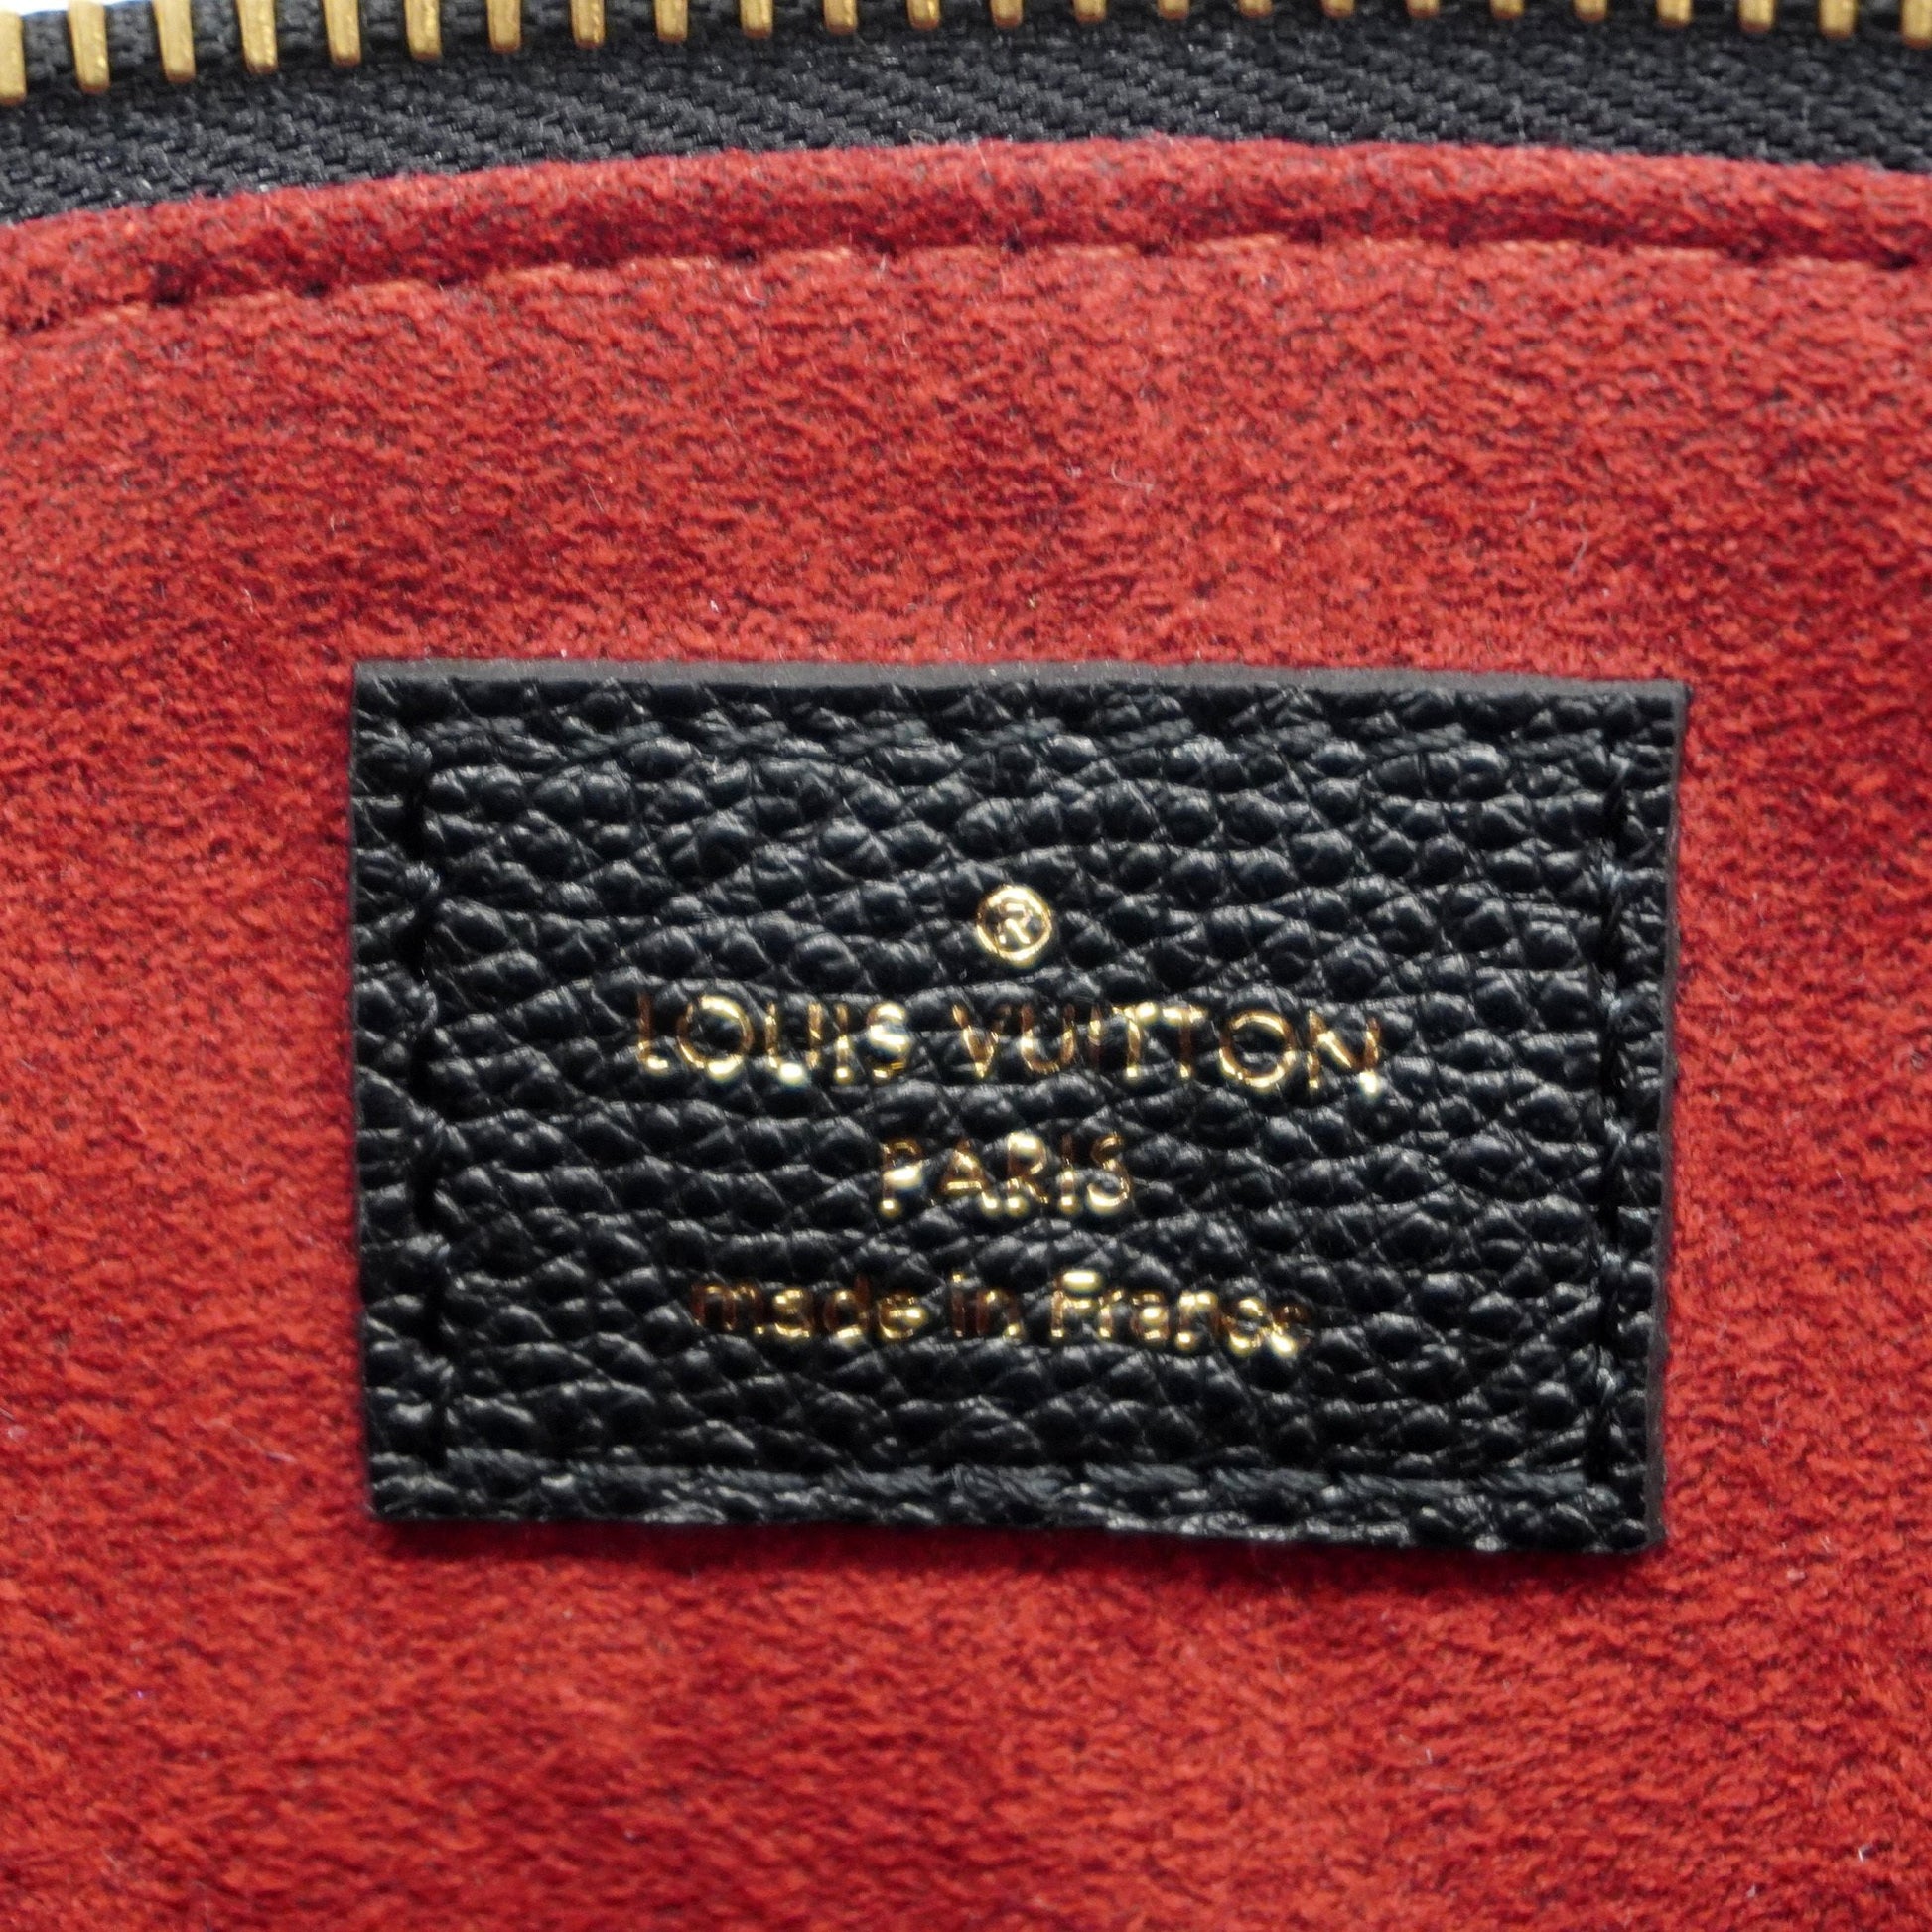 Shop Louis Vuitton MONOGRAM EMPREINTE Petit Palais (M58916) by luxurysuite